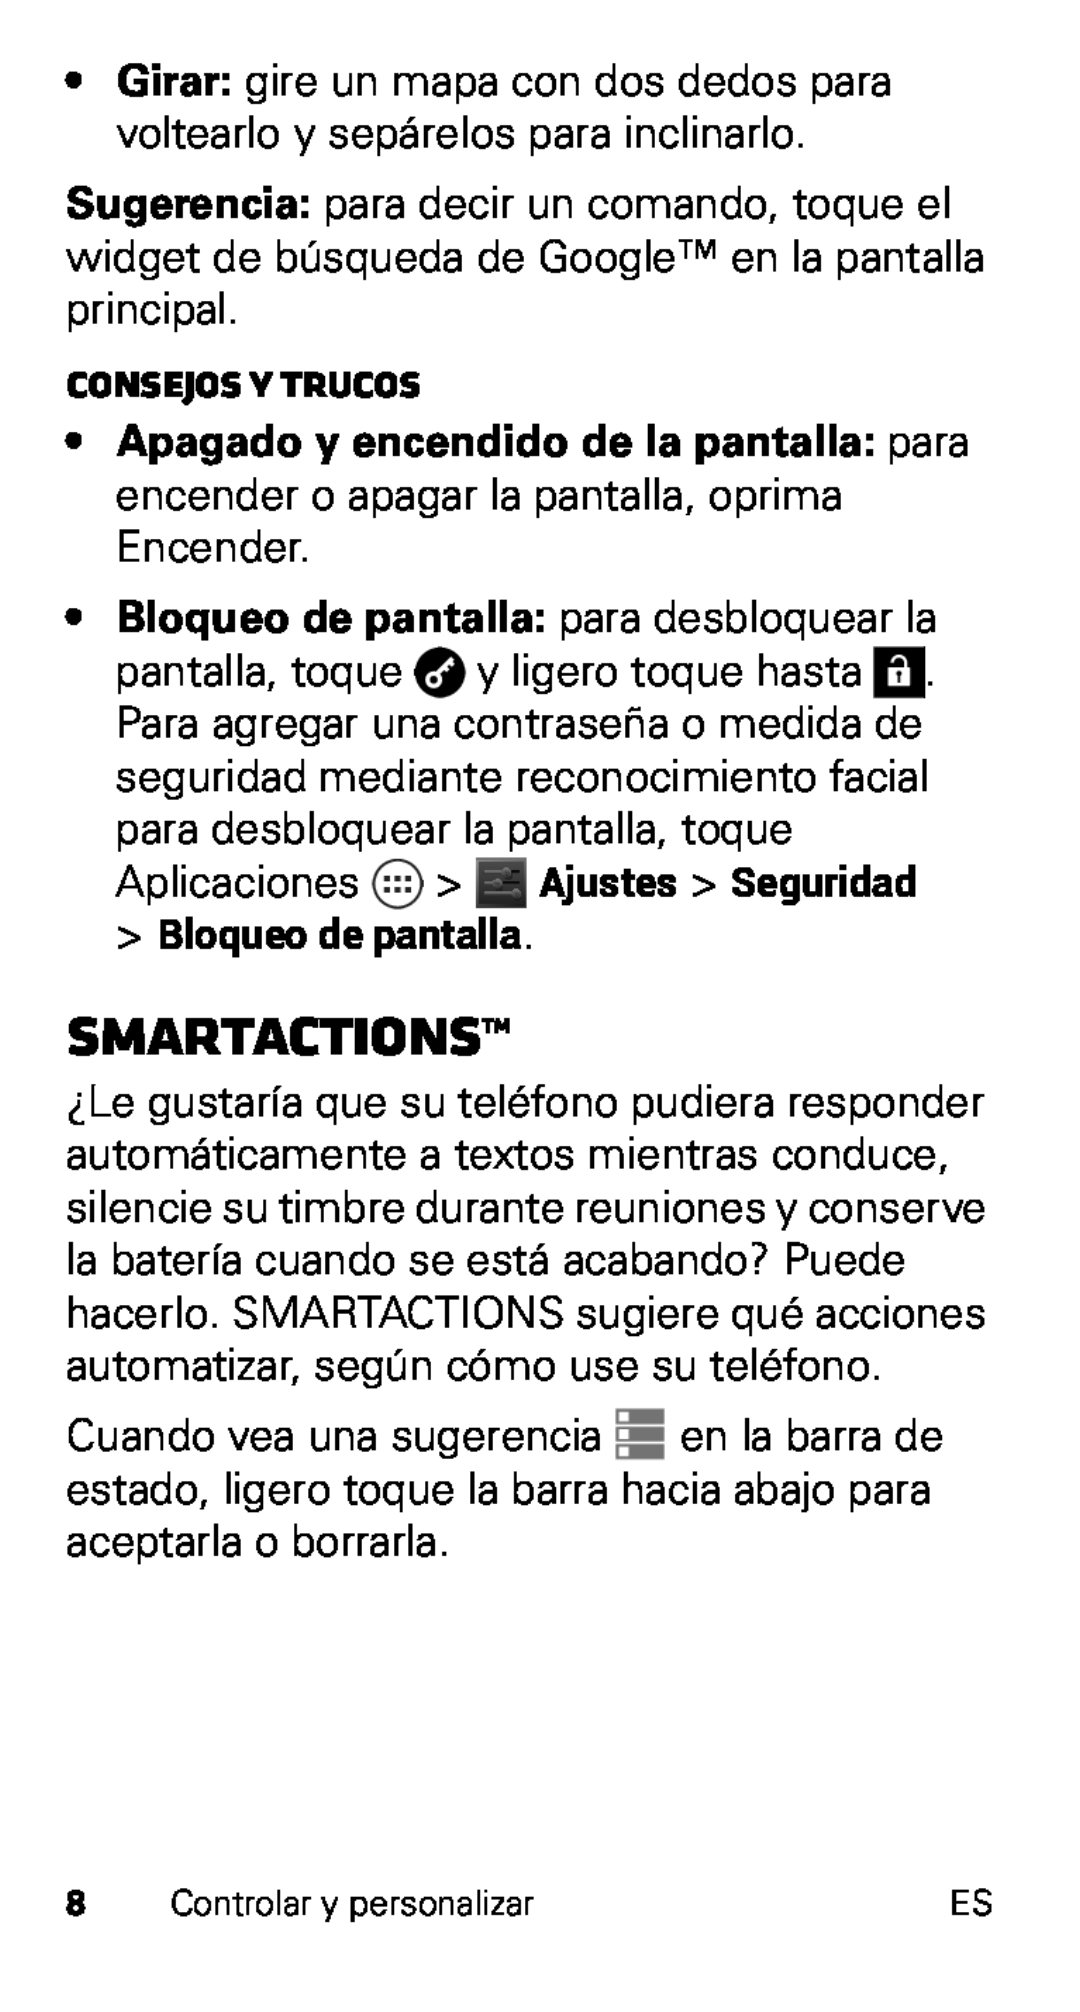 Motorola XT915, D1 manual Smartactions, Bloqueo de pantalla para desbloquear la, Consejos y trucos 